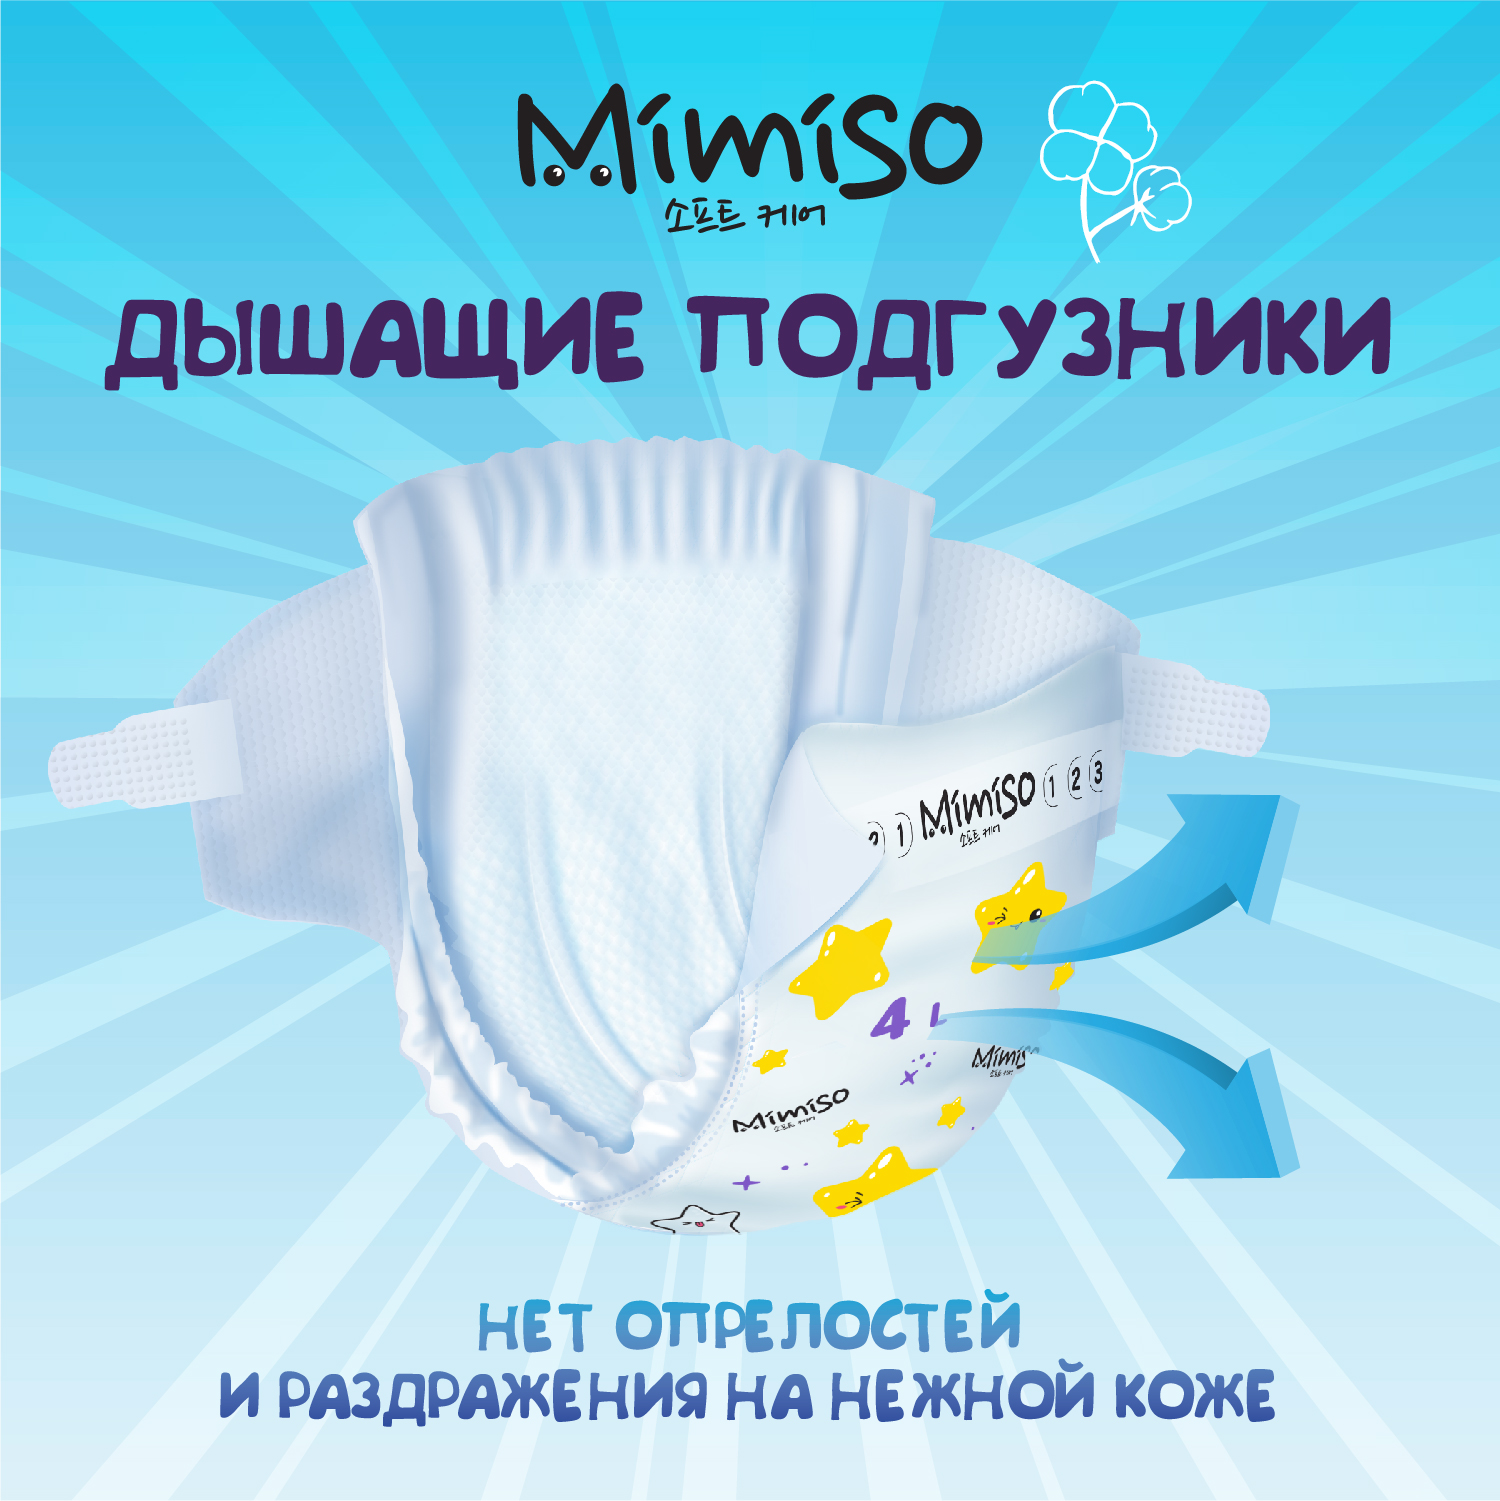 Трусики Mimiso одноразовые для детей 5/XL 13-20 кг mega-pack 78шт - фото 4